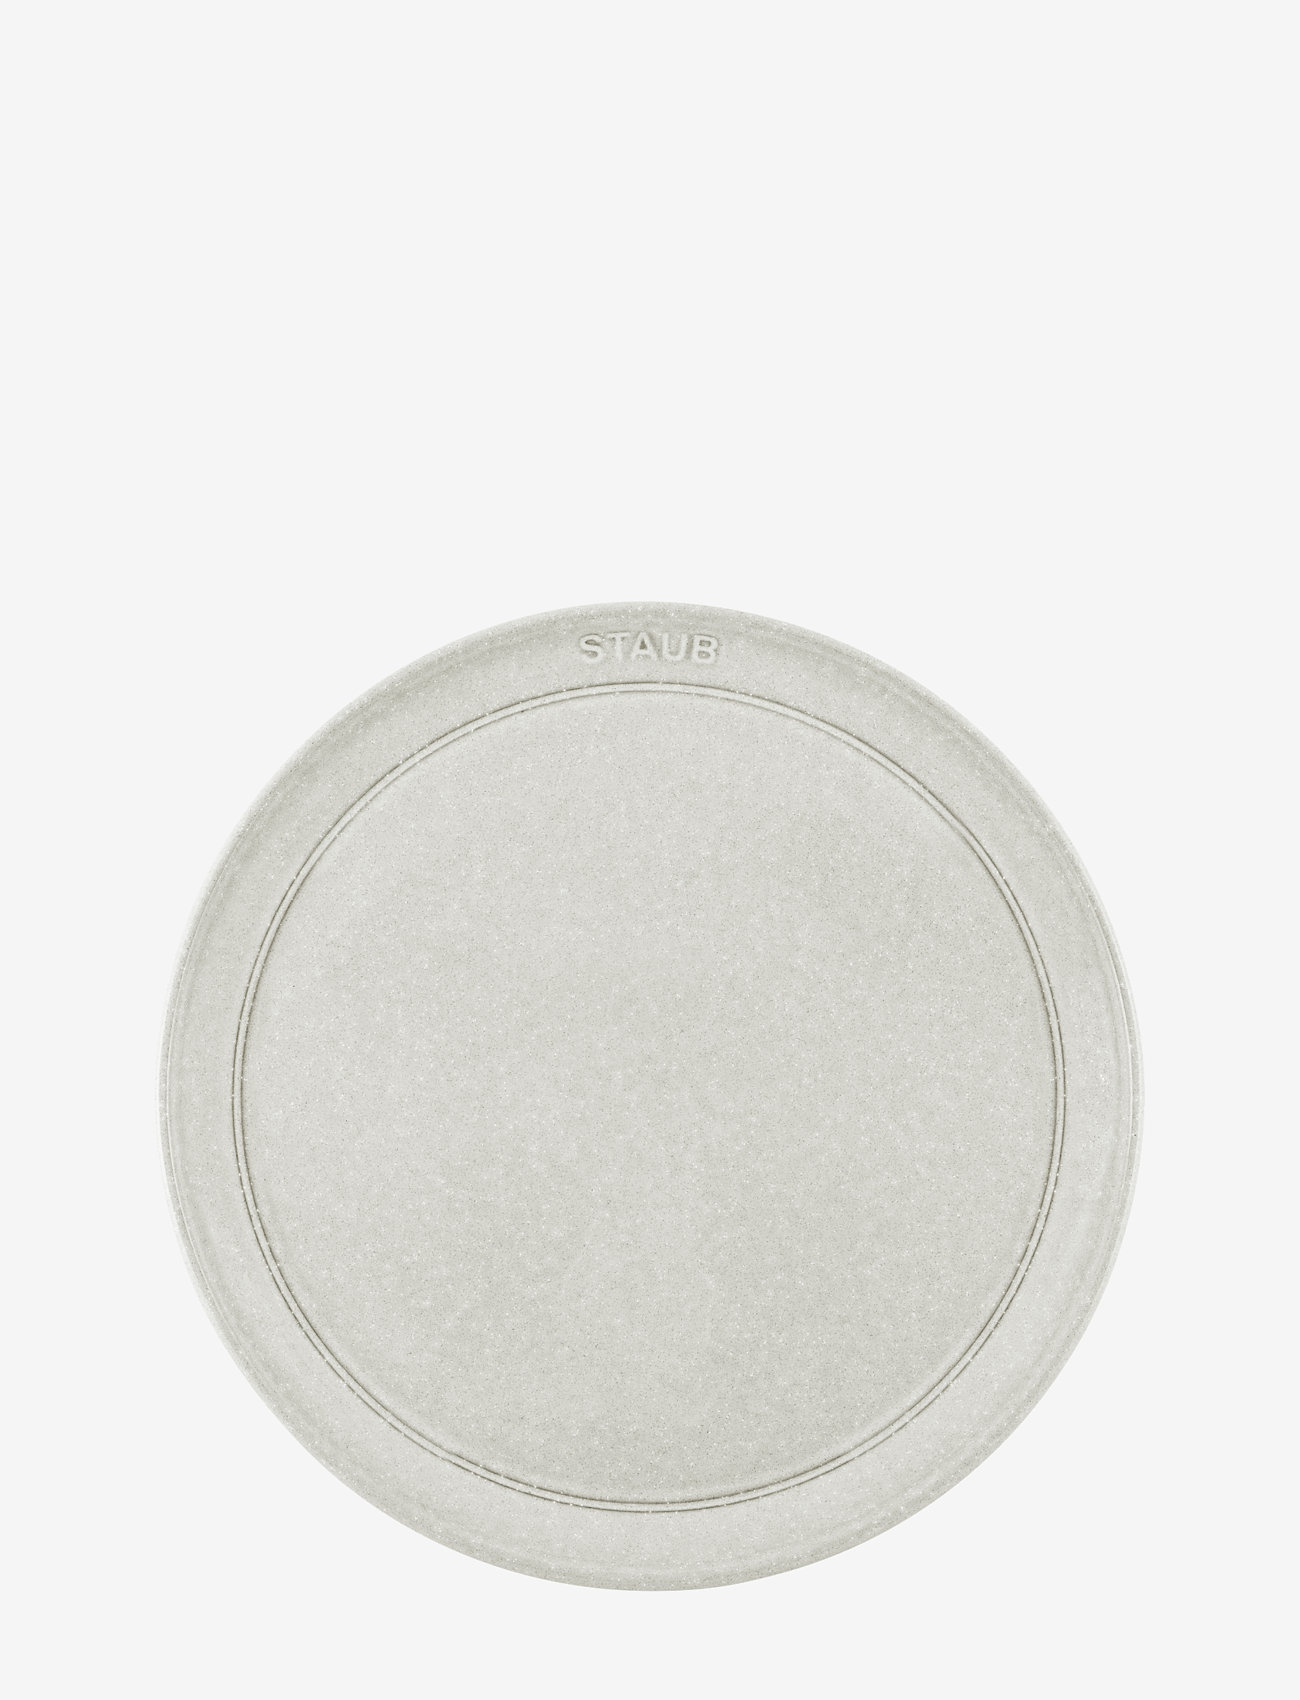 STAUB - Lautas 26 cm, valkoinen tryffeli - alhaisimmat hinnat - grey - 1